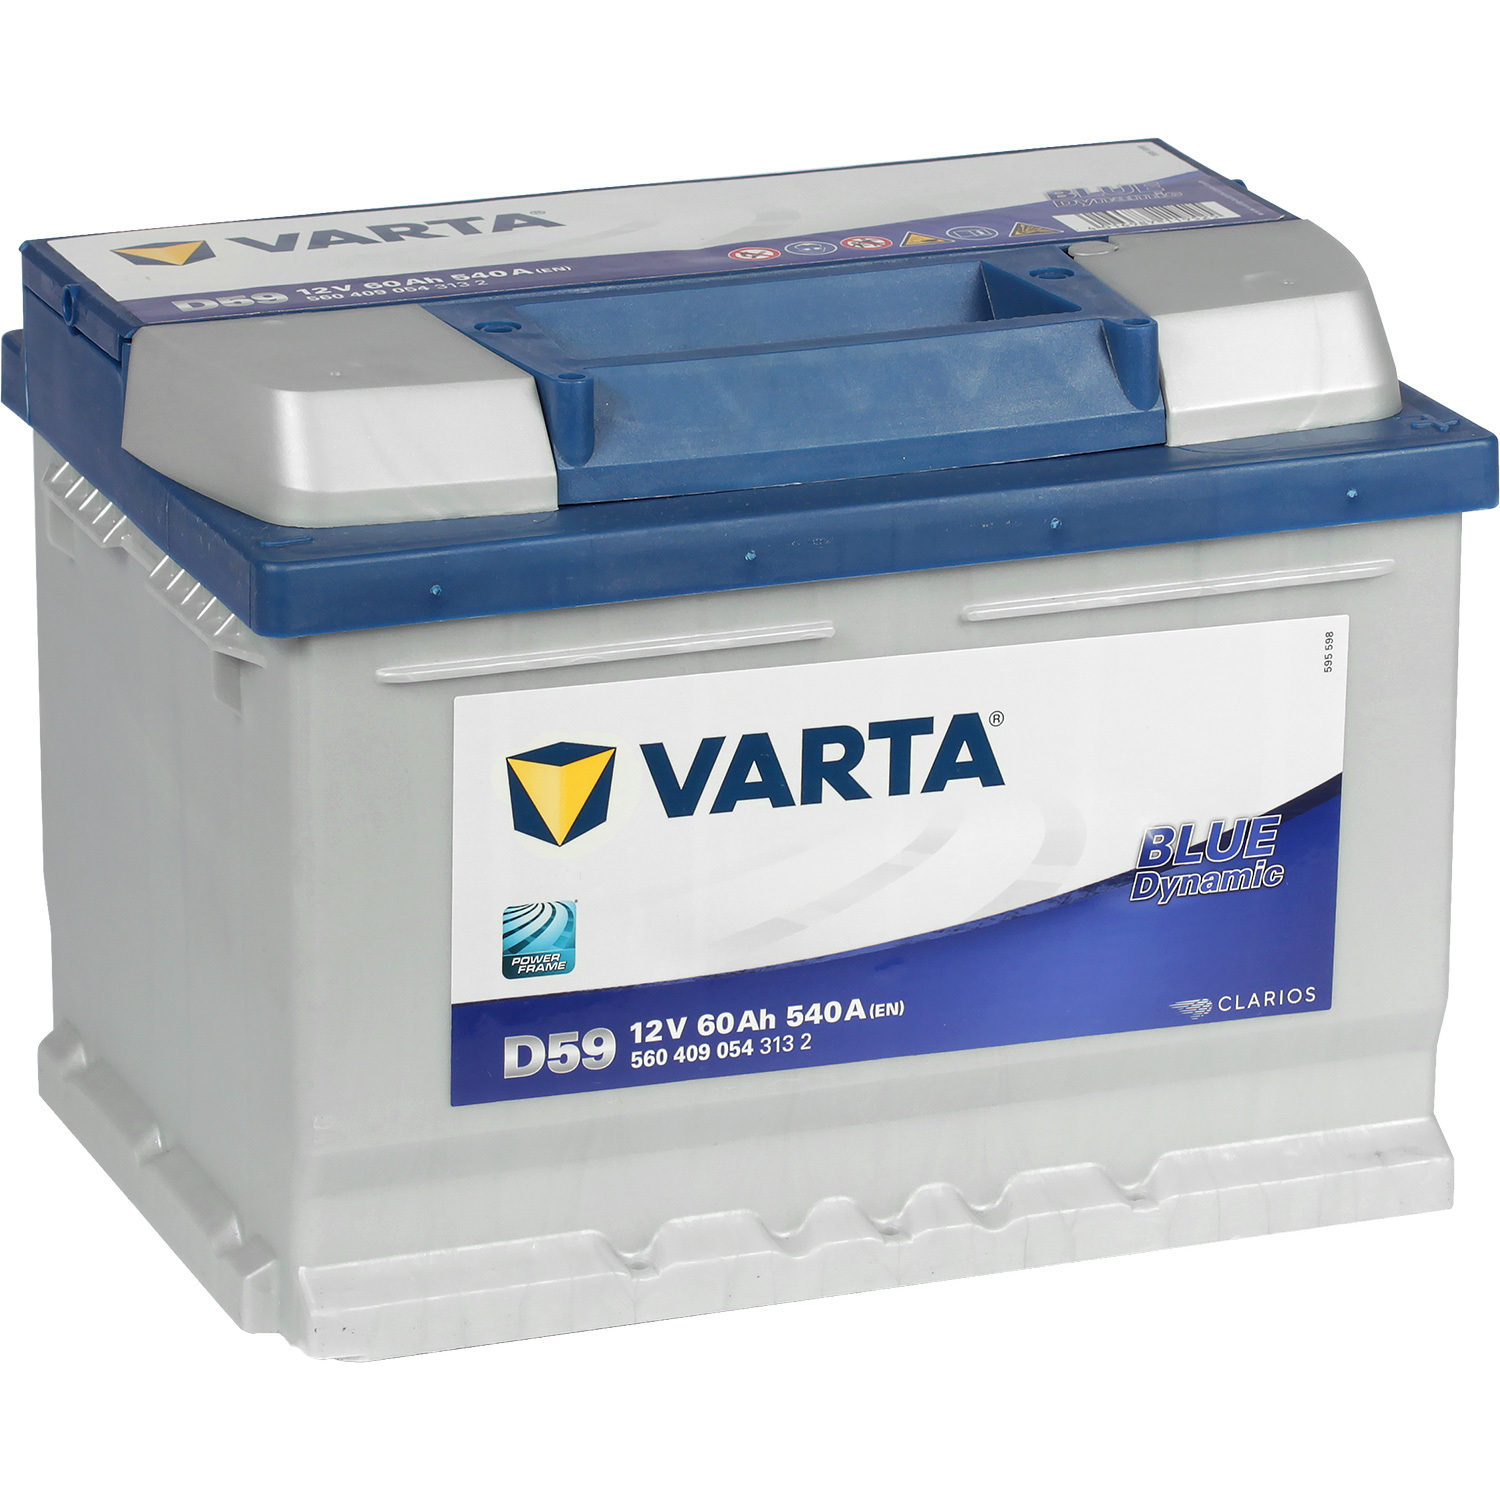 Varta Автомобильный аккумулятор Varta Blue Dynamic D59 60 Ач обратная полярность LB2 varta автомобильный аккумулятор varta blue dynamic a14 40 ач обратная полярность b19l